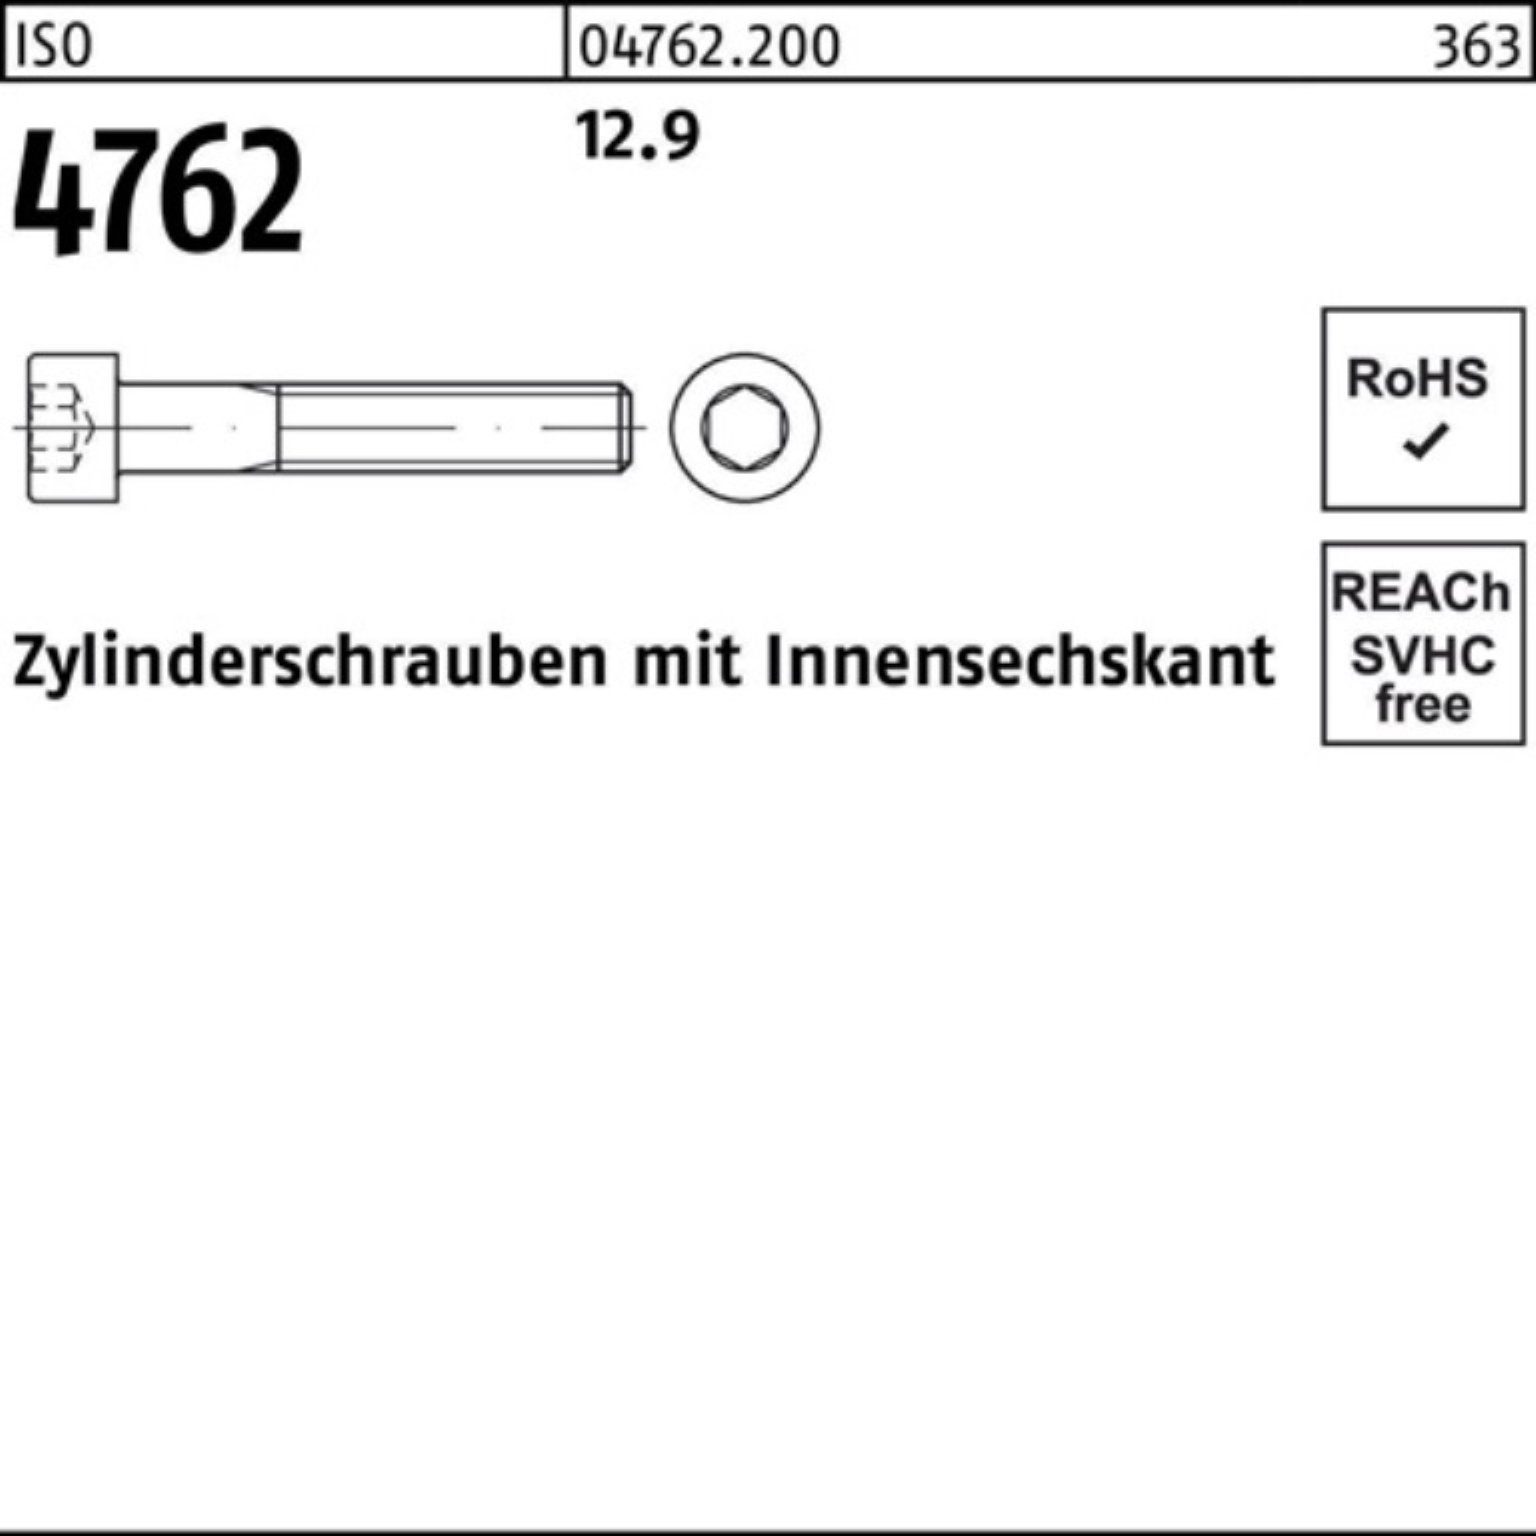 20 Pack 500 Zylinderschraube Innen-6kt 4762 Zylinderschraube M5x 500er 12.9 ISO Stück Reyher